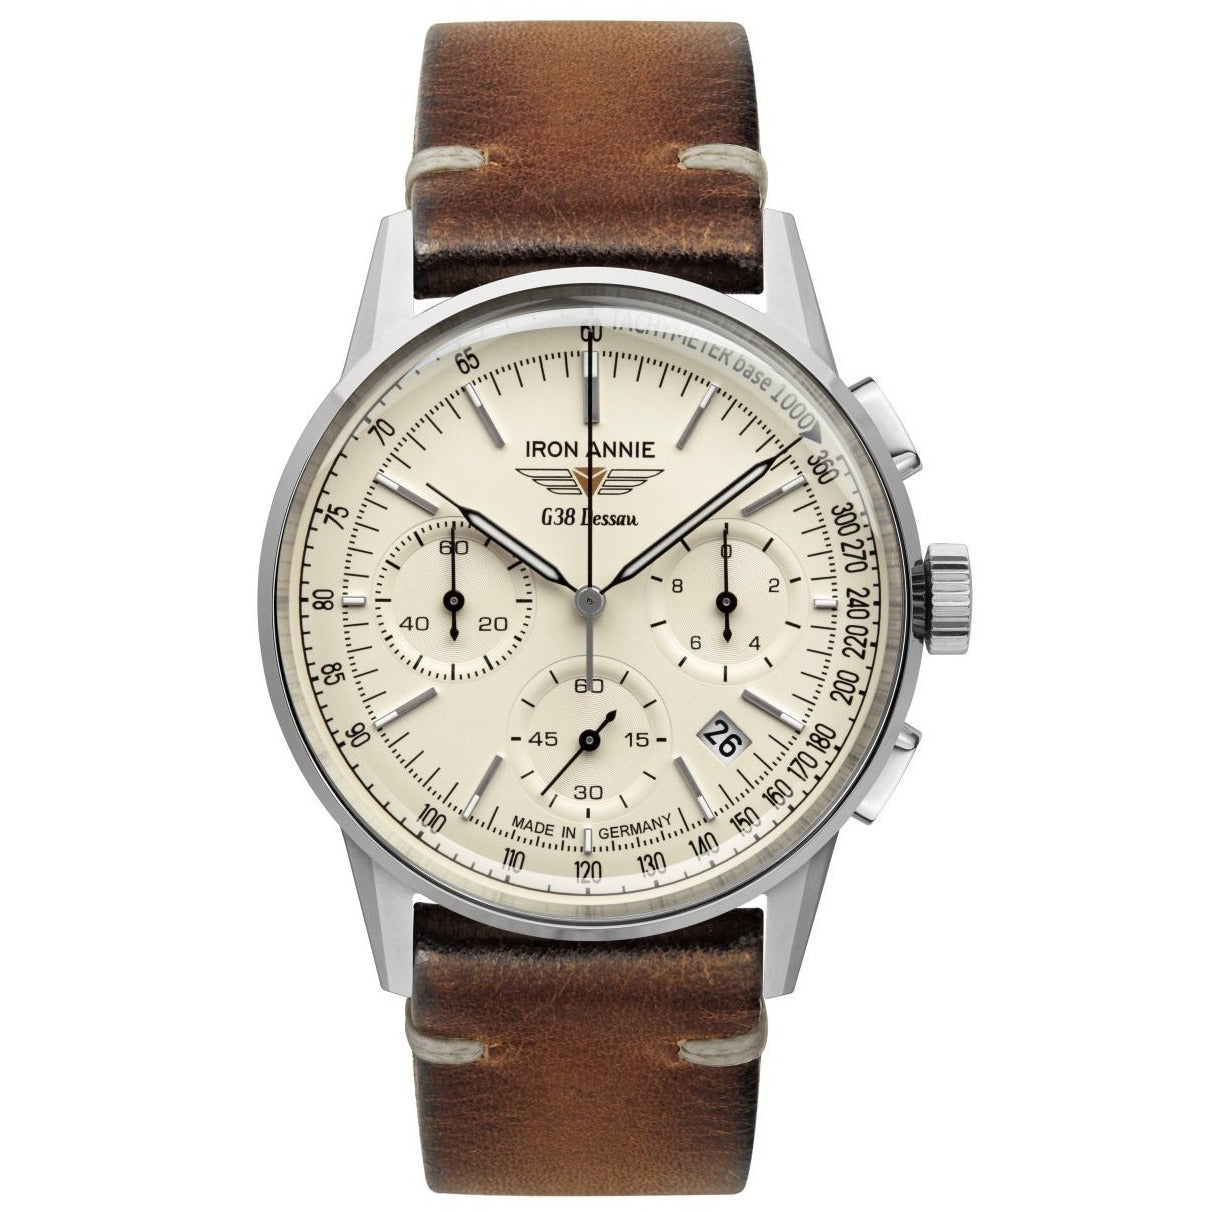 IRON ANNIE G38 Dessau Chronograph Beige/Vintage Brown Watch